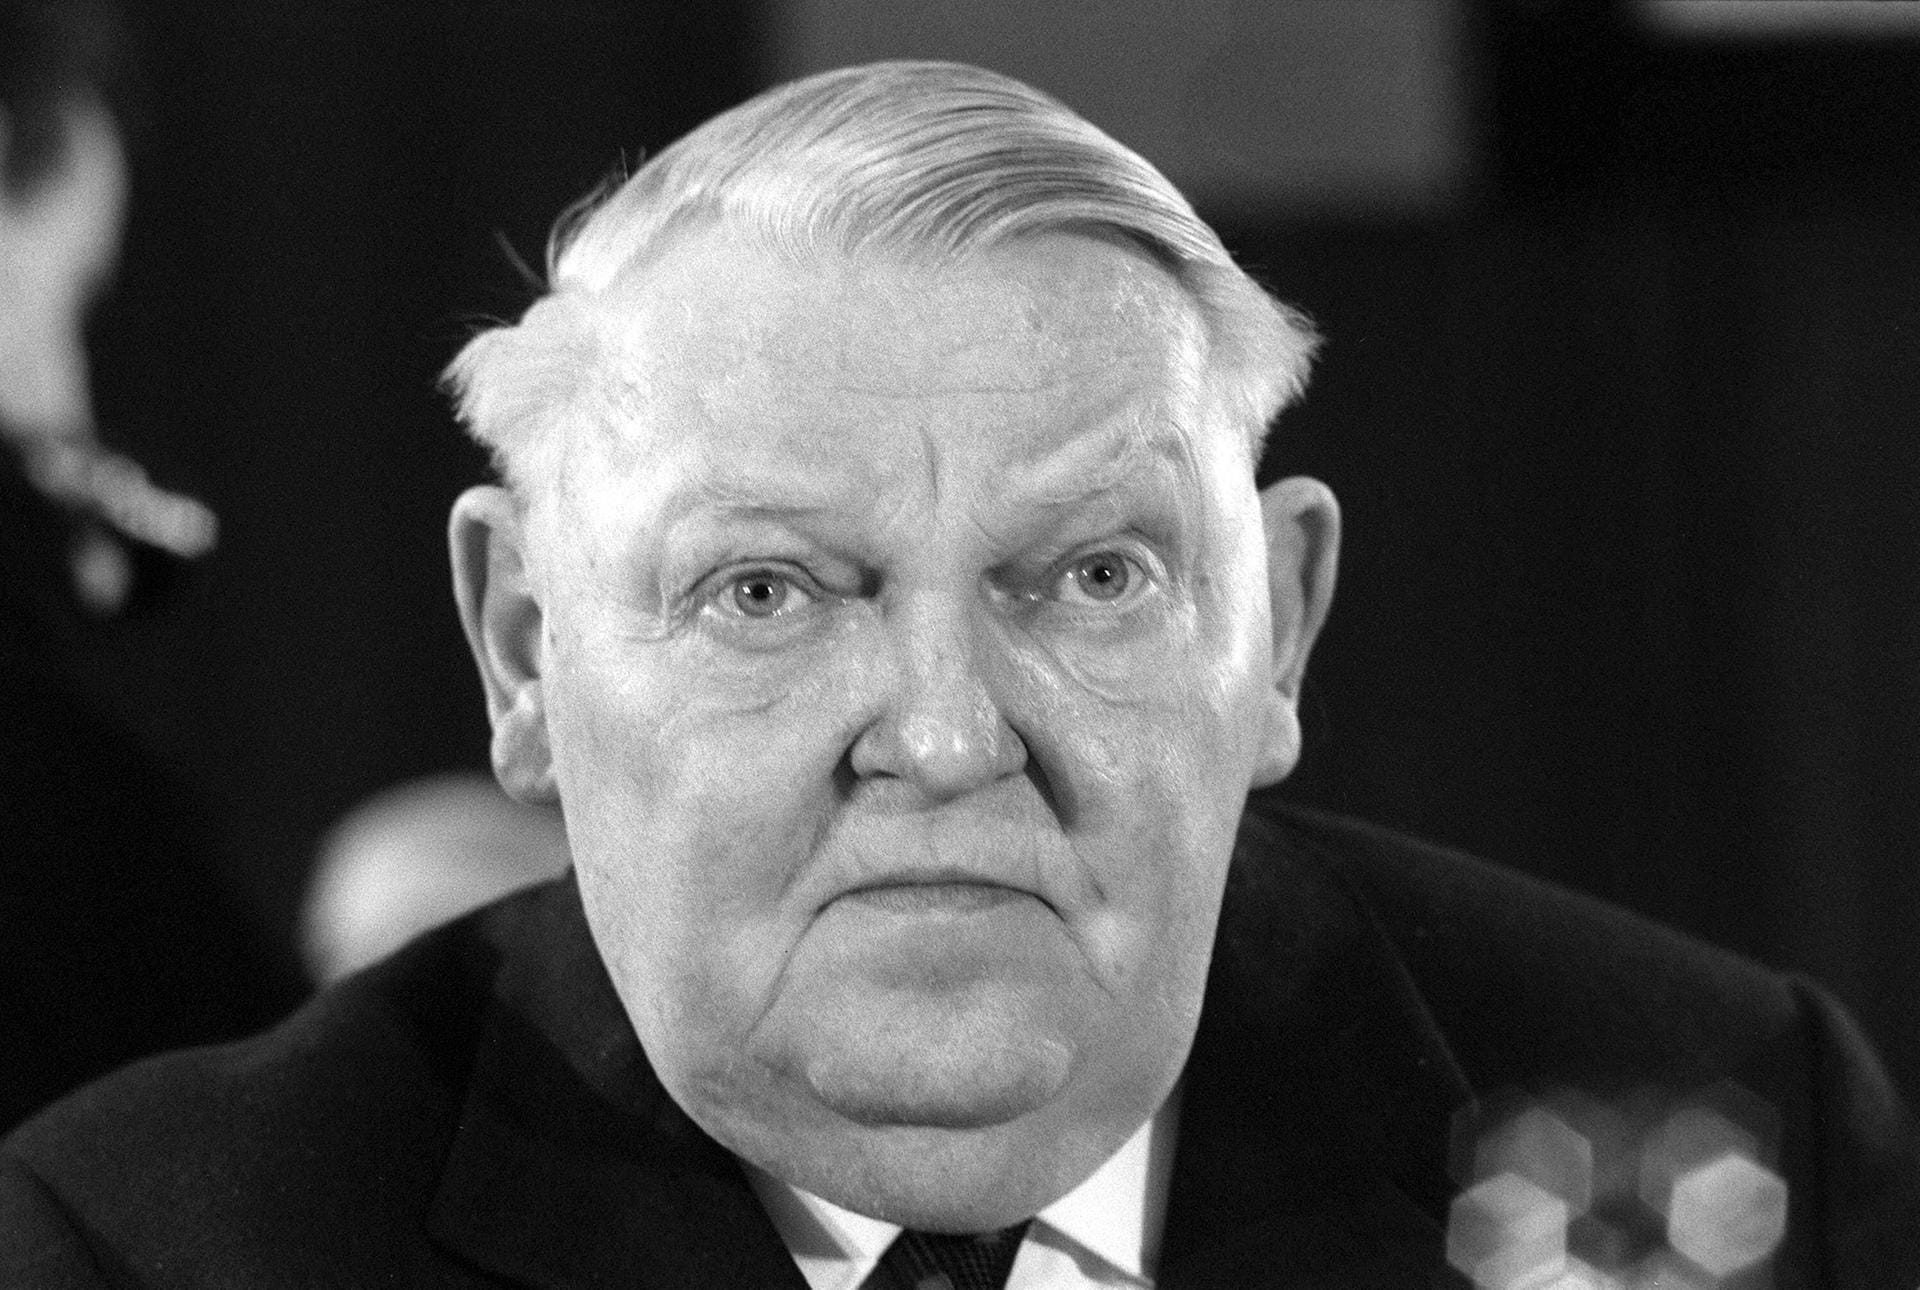 1963 - 1966: Nach seiner Zeit als Wirtschaftsminister wird Ludwig Erhard 1963 Bundeskanzler. Trotz erfolgreicher Wiederwahl 1965 endet seine Amtszeit 1966 nach dem Rücktritt der Minister des Koalitionspartners FDP. Der Grund: ein Konflikt um Steuererhöhungen.